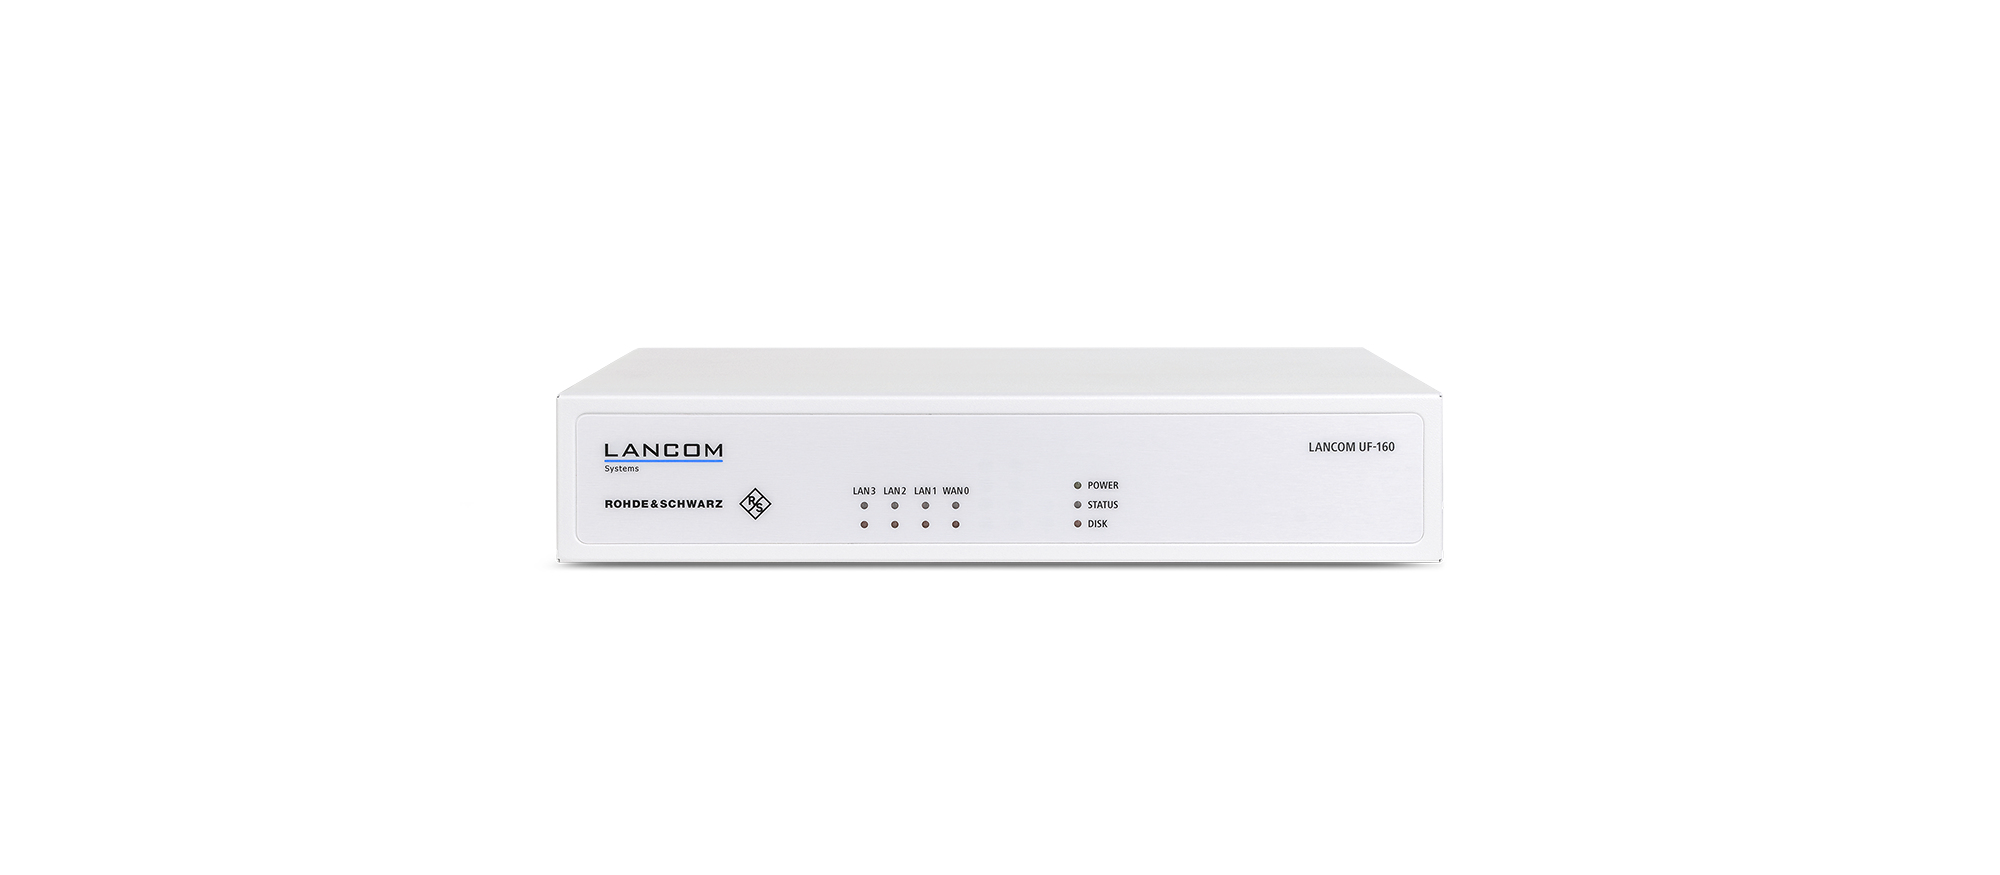 Lancom UF-160 - 3550 Mbit/s - 1,2 Gbit/s - 750 Mbit/s - IEEE 802.1Q - EAP - HTTPS - IPSec - SSL/TLS - BGP